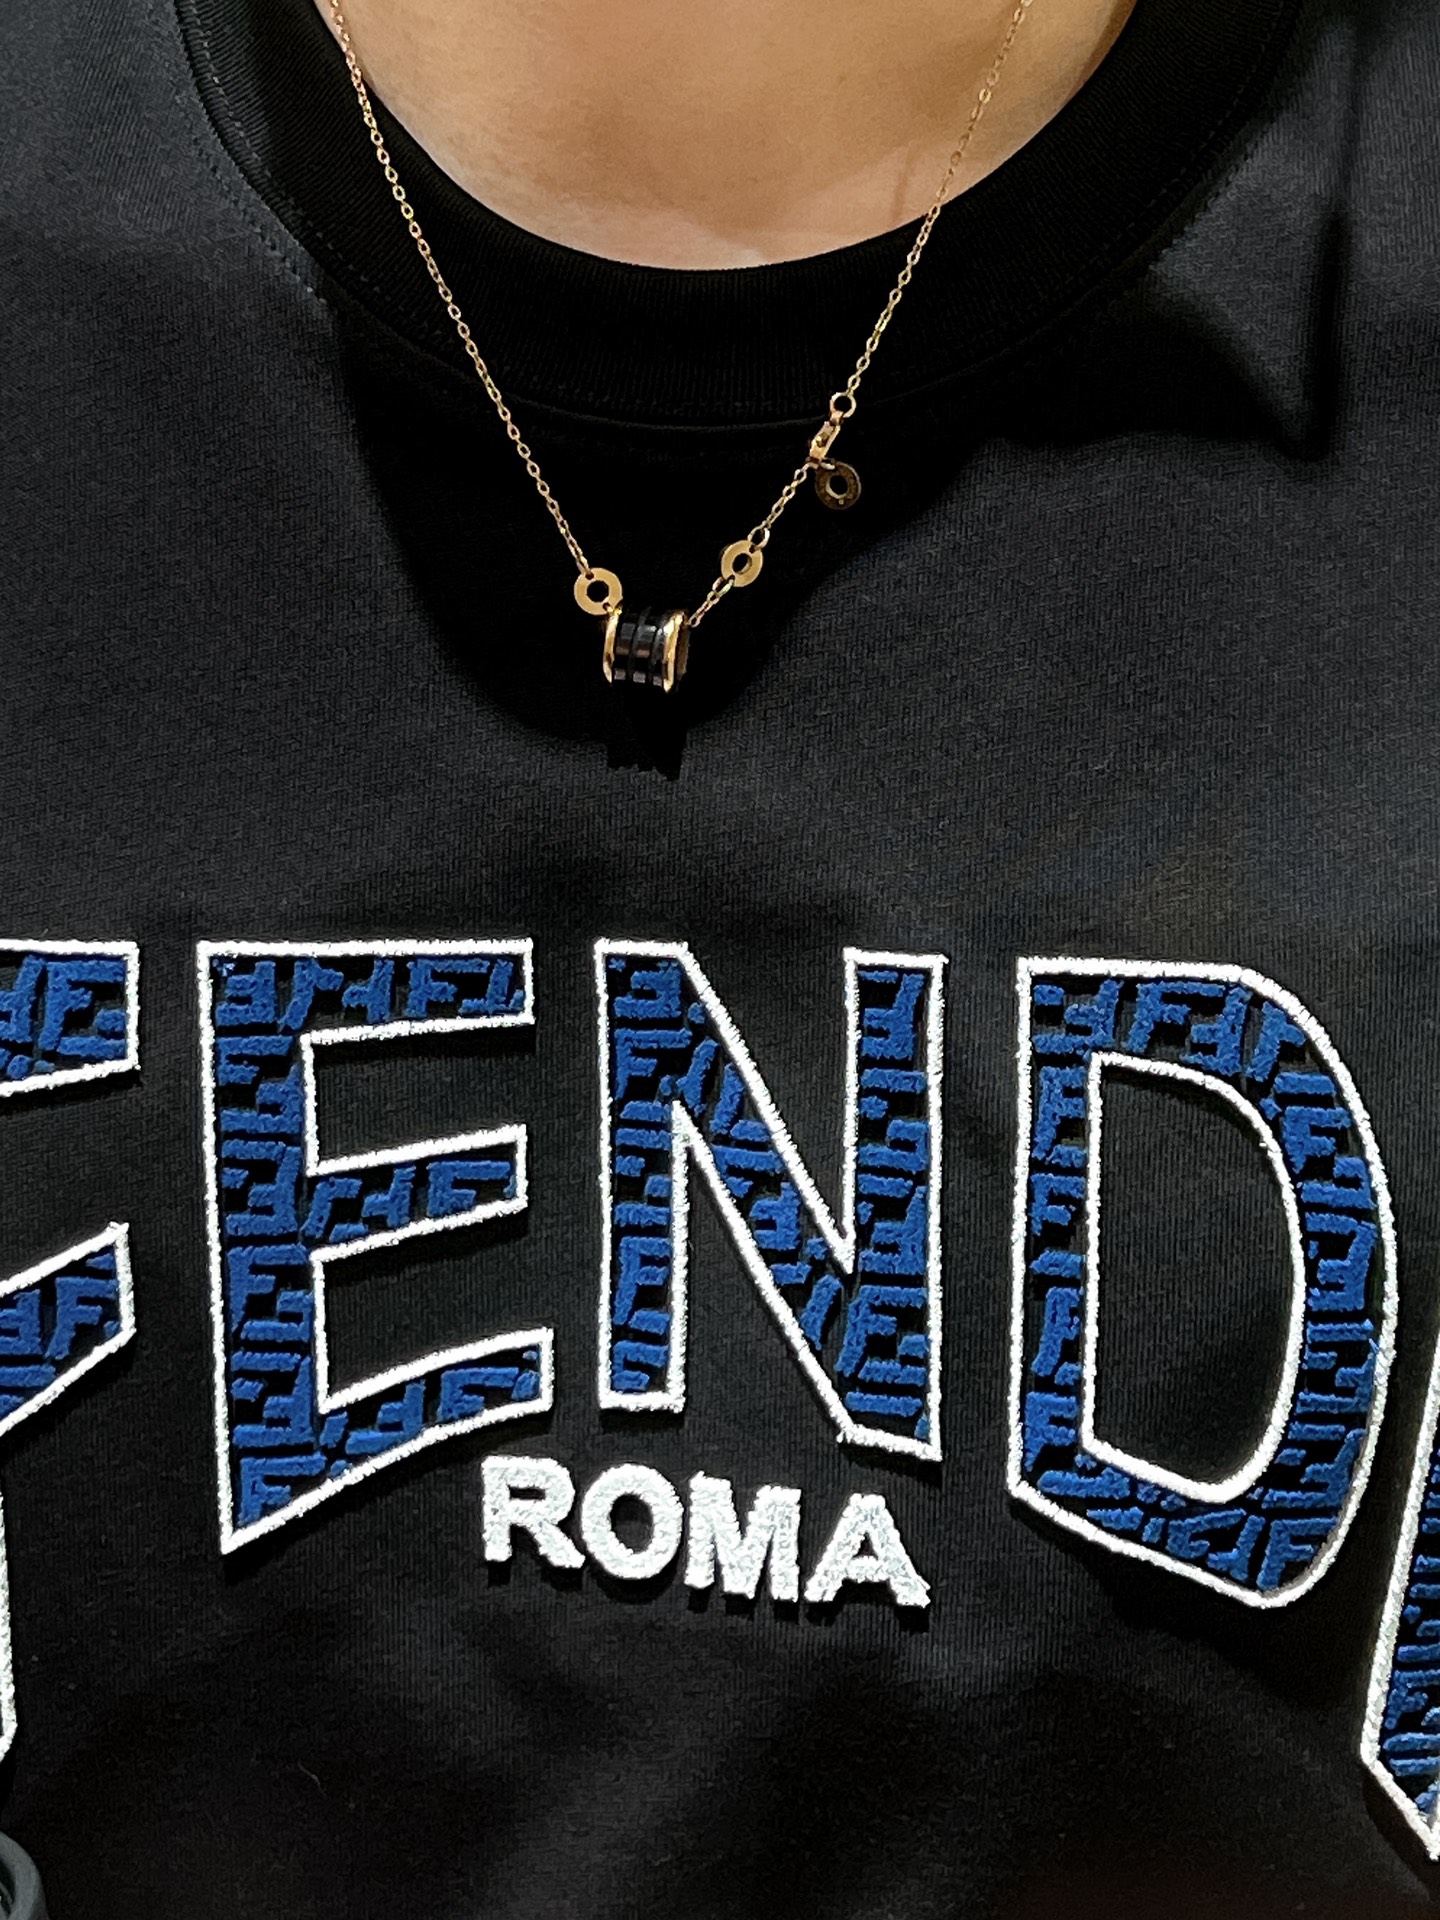 芬迪夏季新款FENDI渐变牙刷刺绣字母短袖丝光棉宽松T恤这款T恤融合了火焰渐变的设计元素展现了品牌独特的